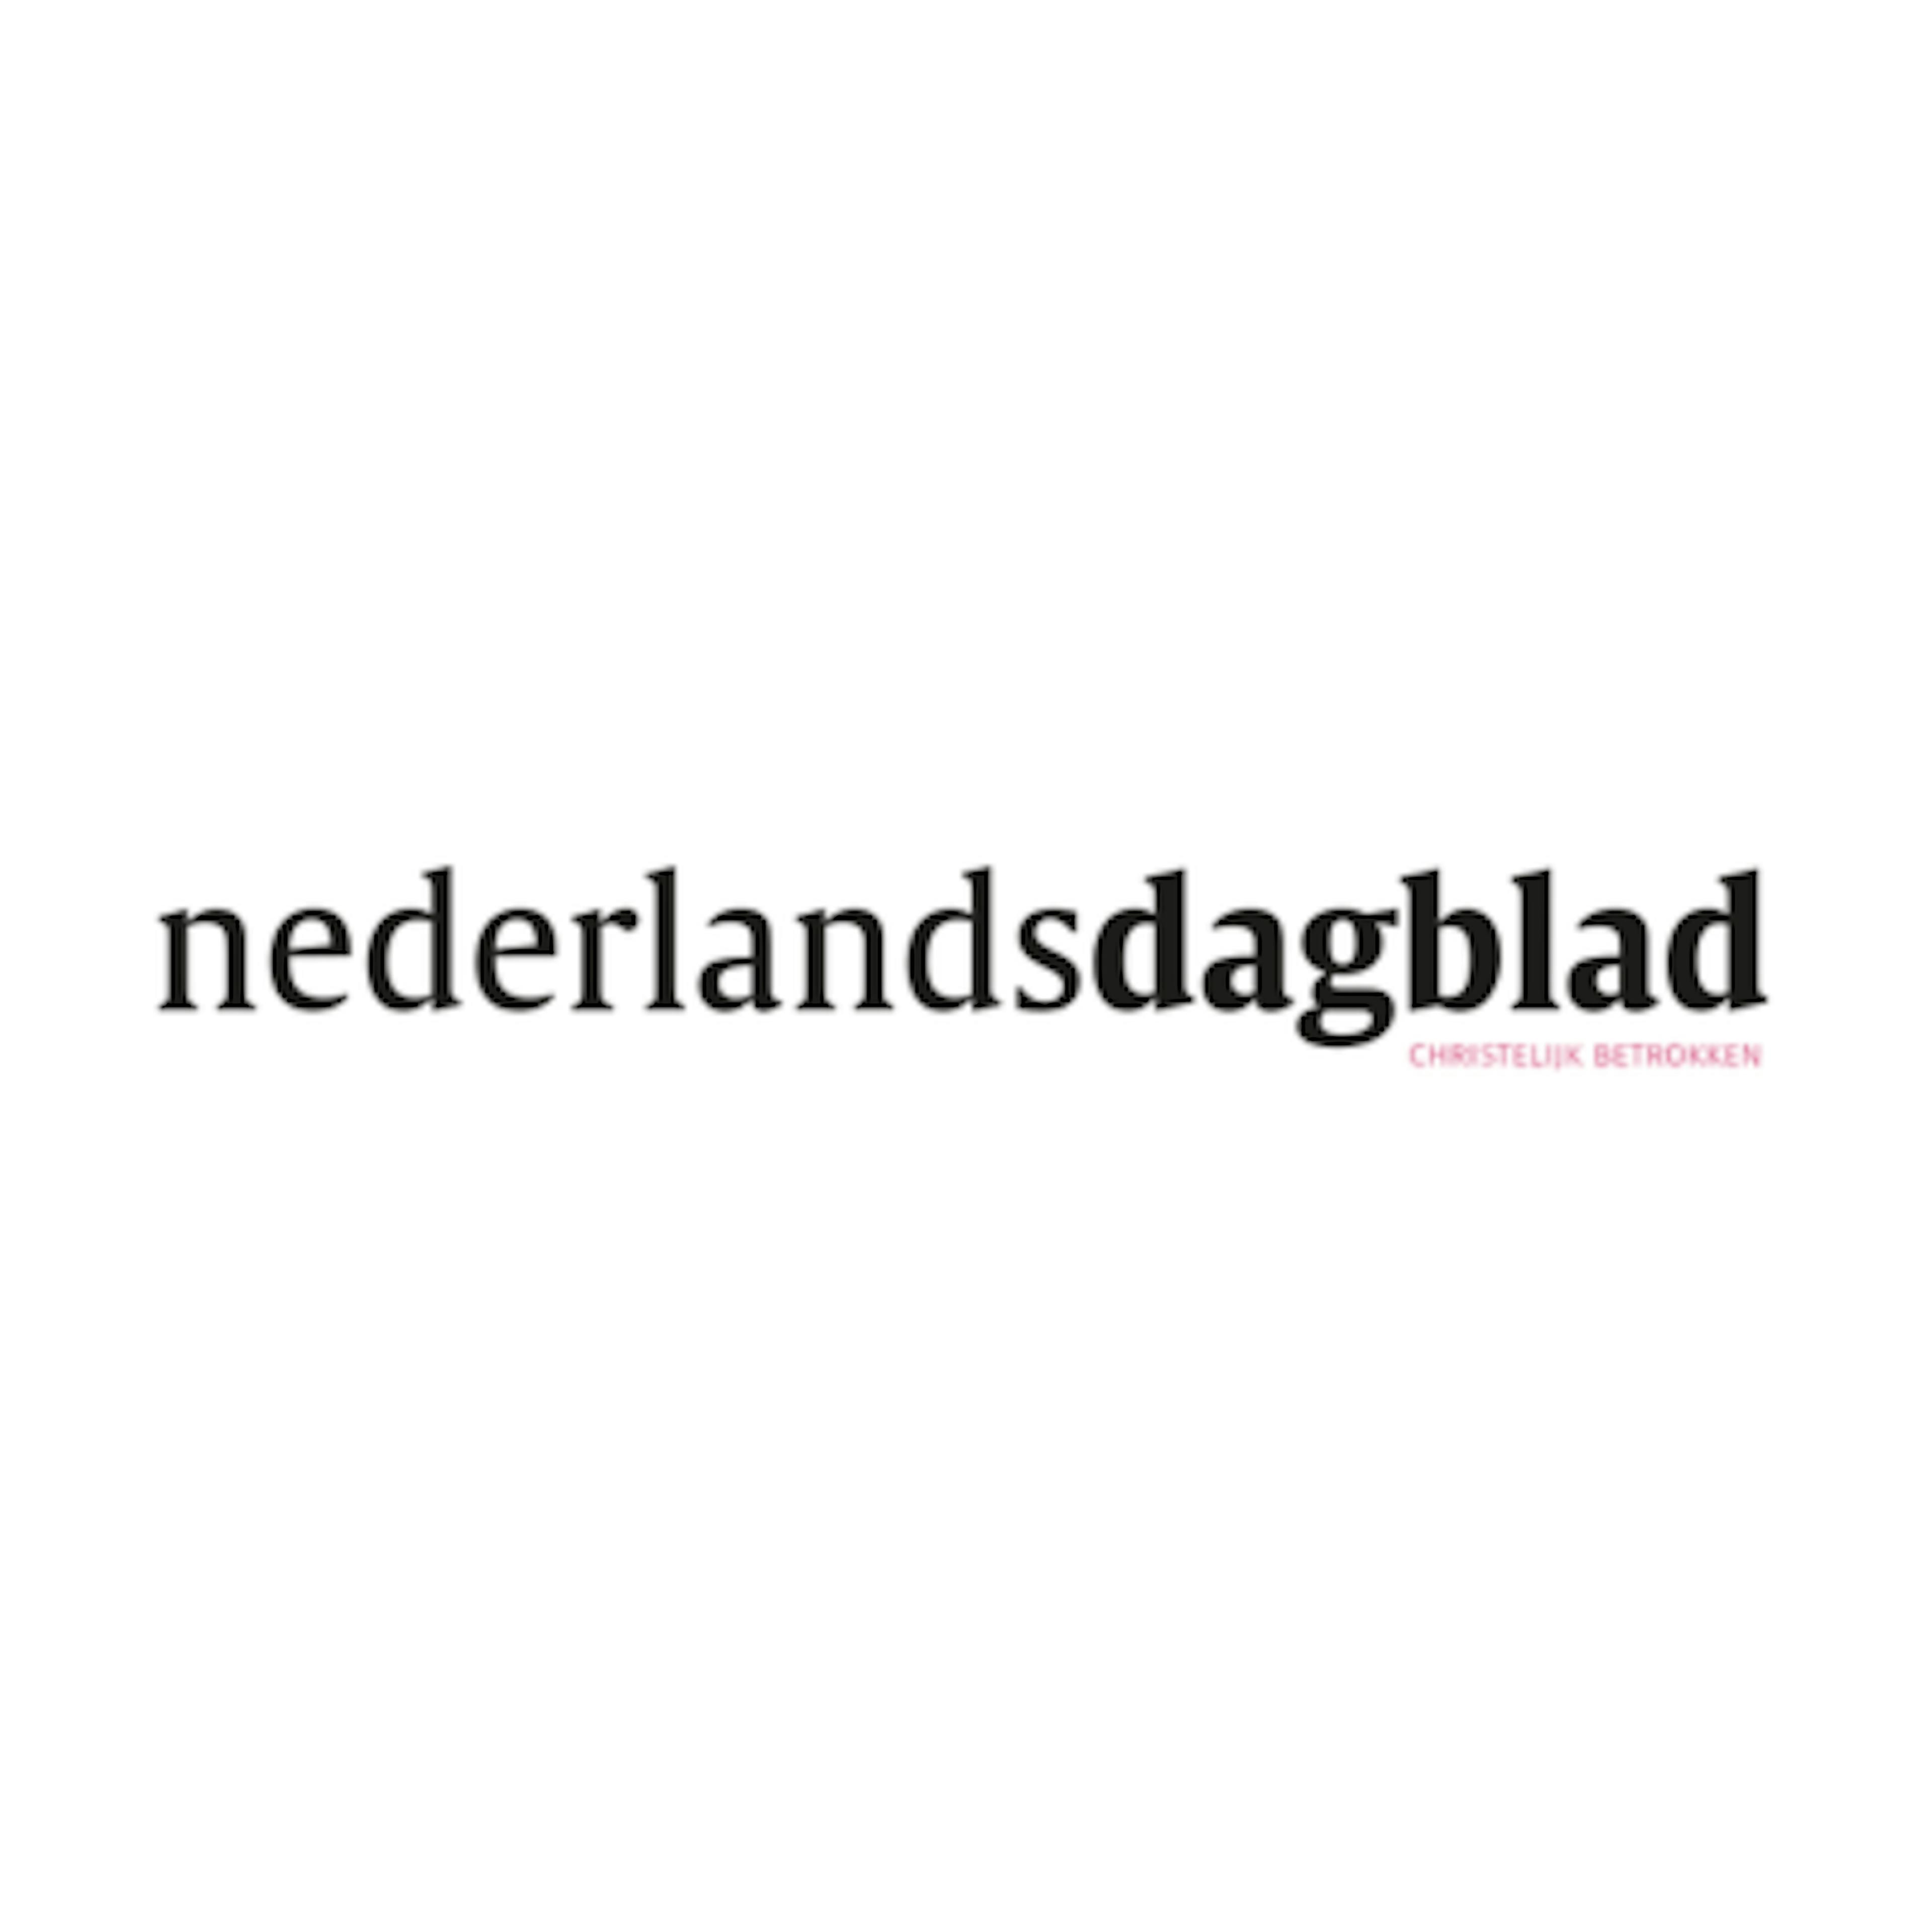 Nederlands Dagblad Logo